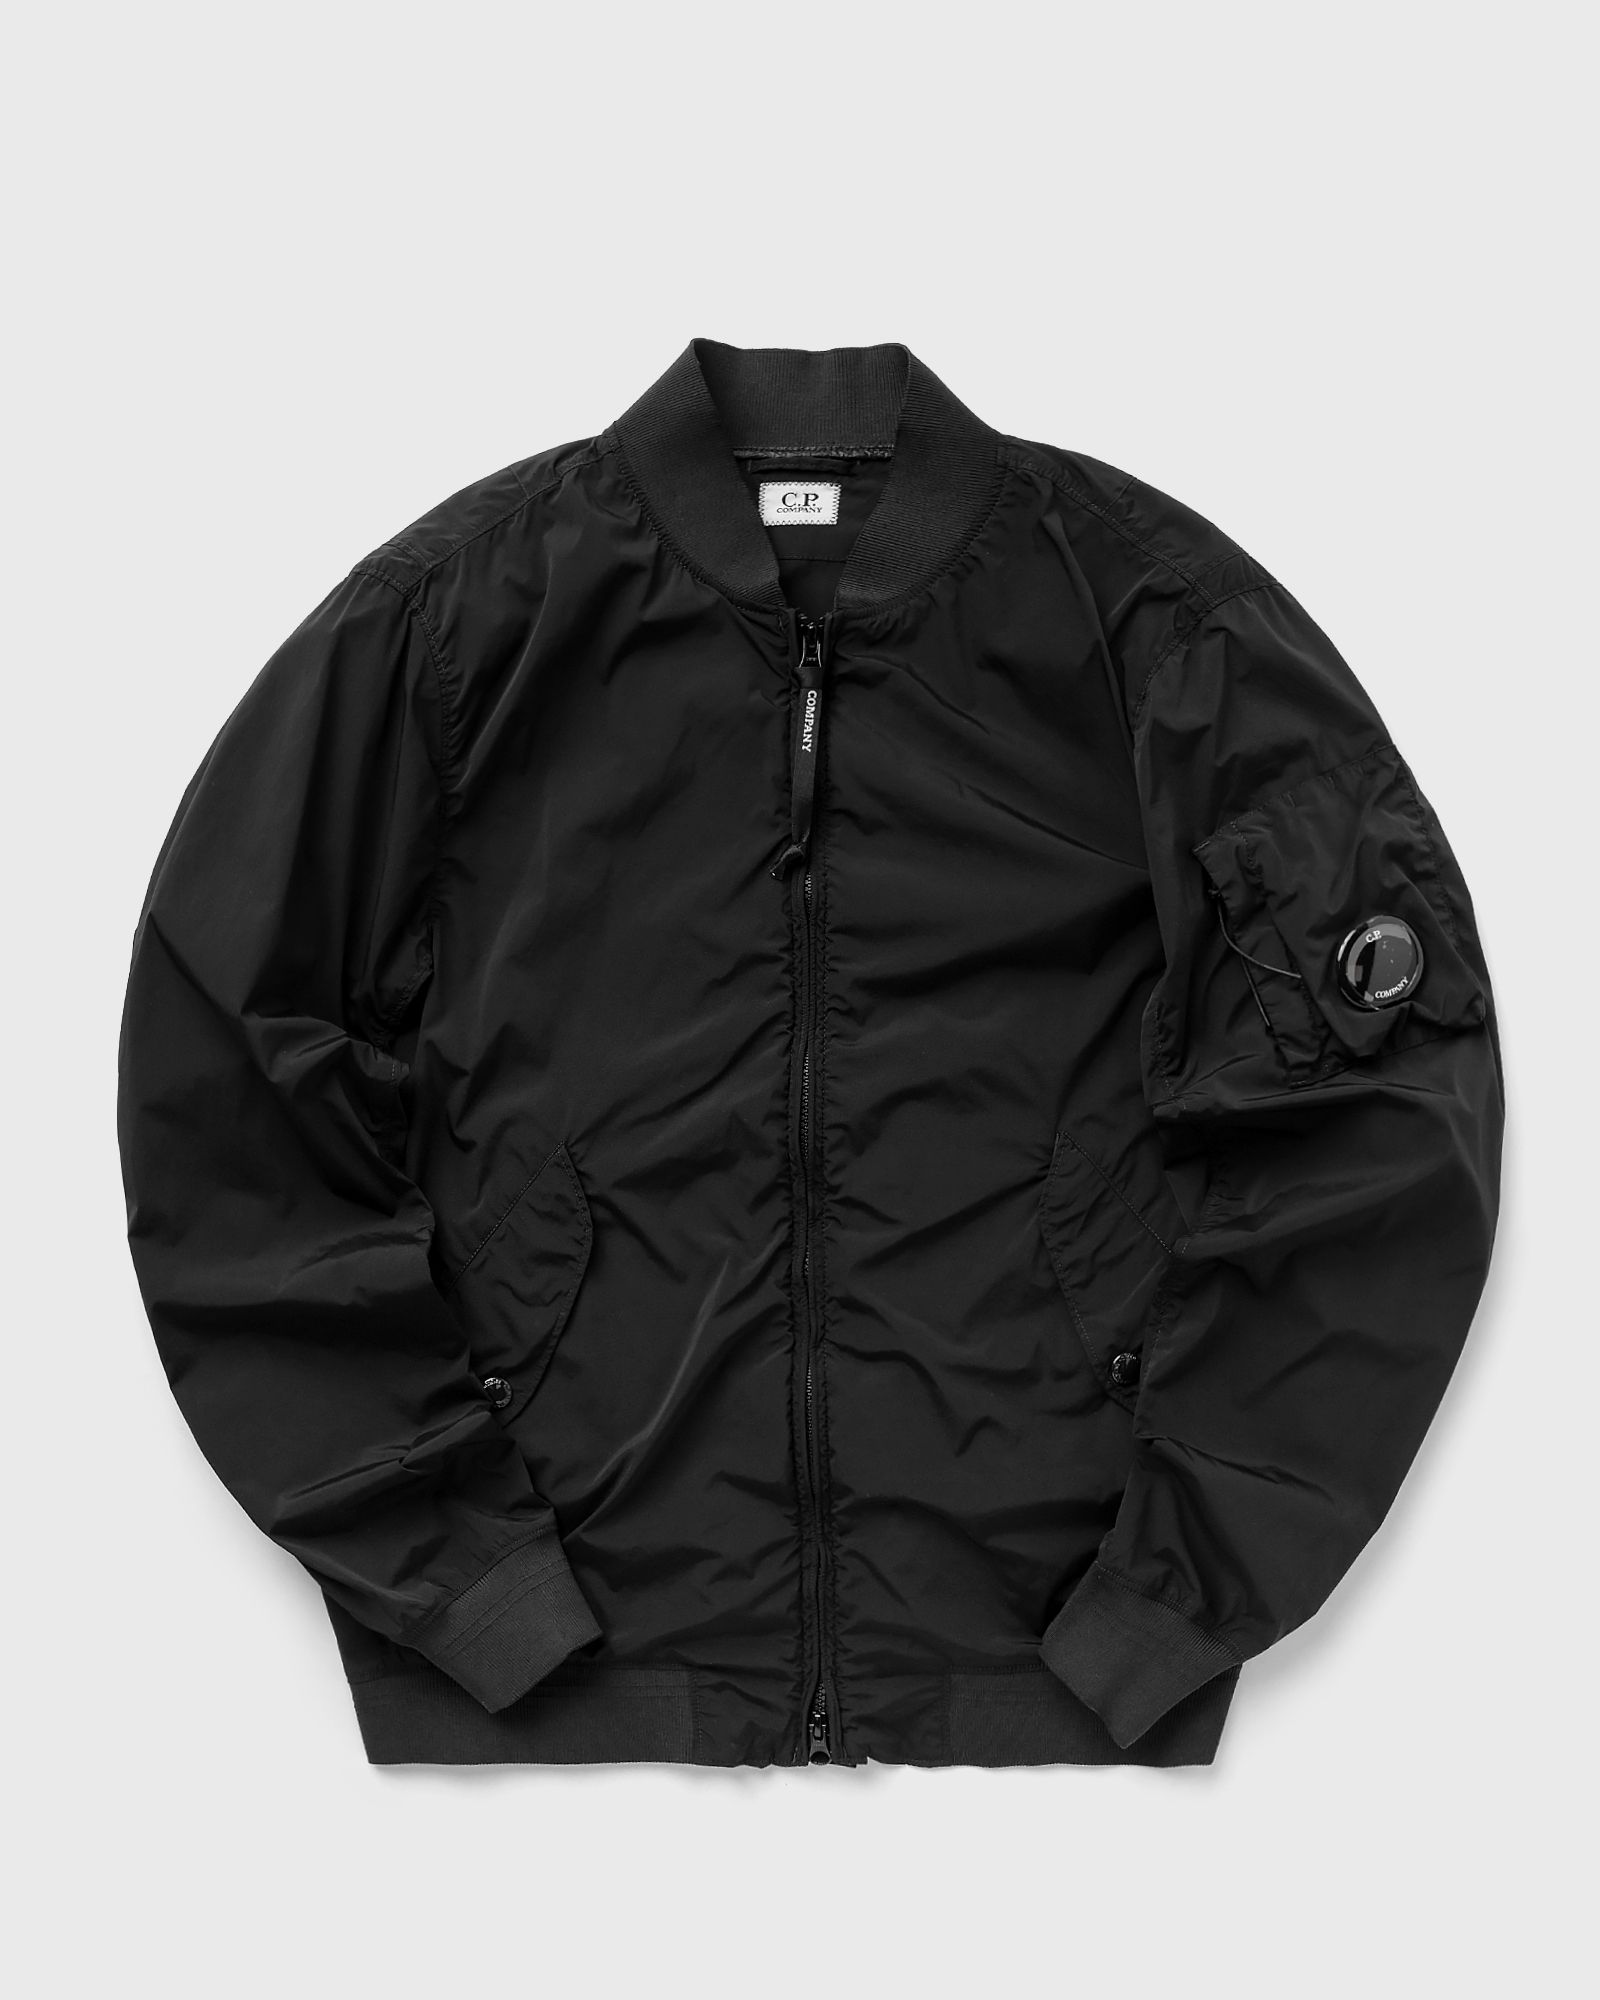 c.p. company nycra-r bomber jacket men jackets